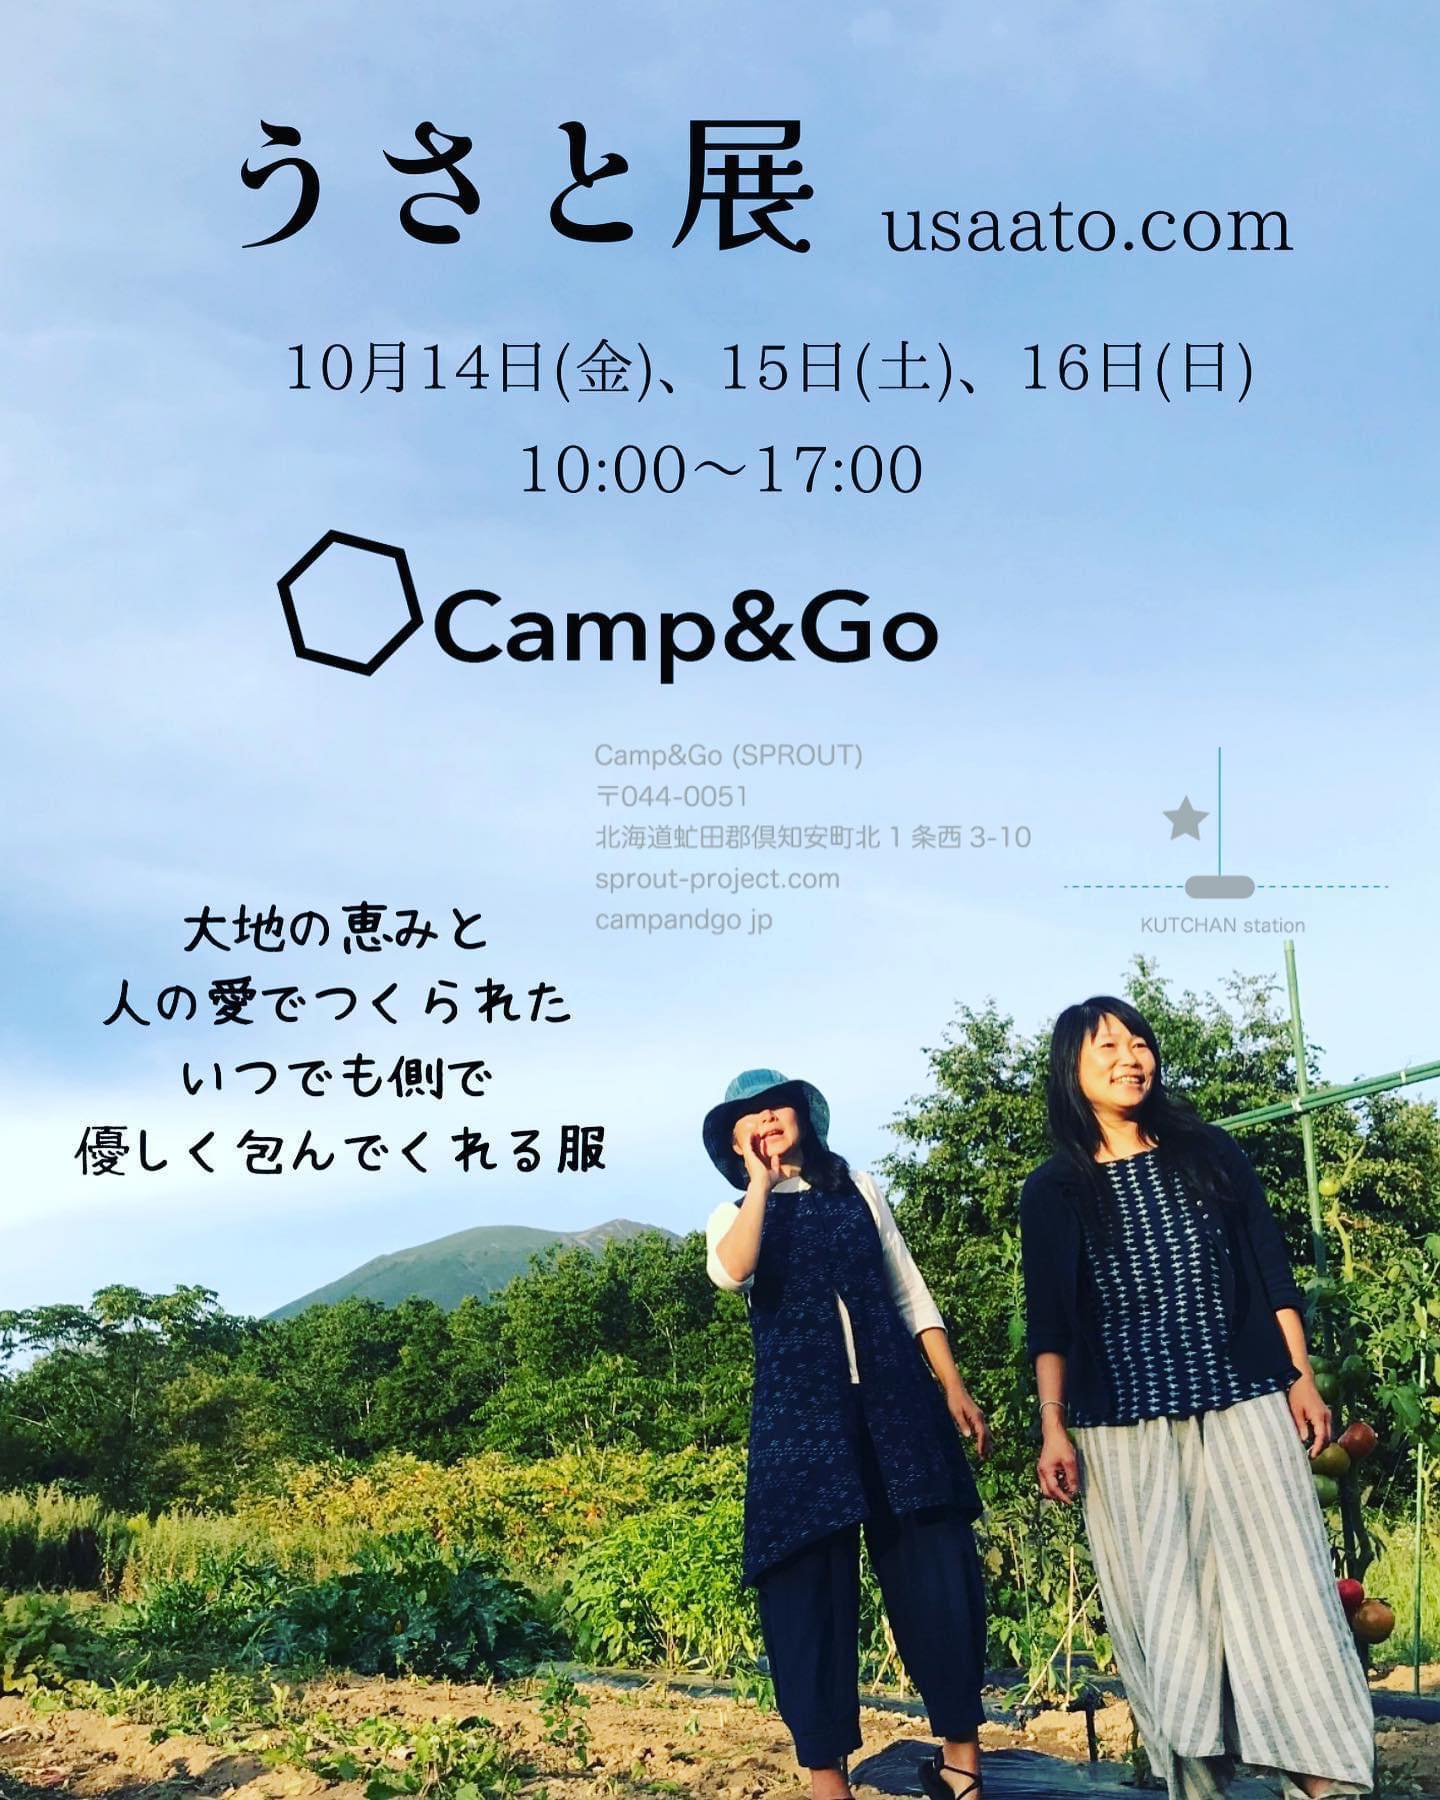 開催予定日 10月14日 - 10月16日うさと展 - Camp&Go